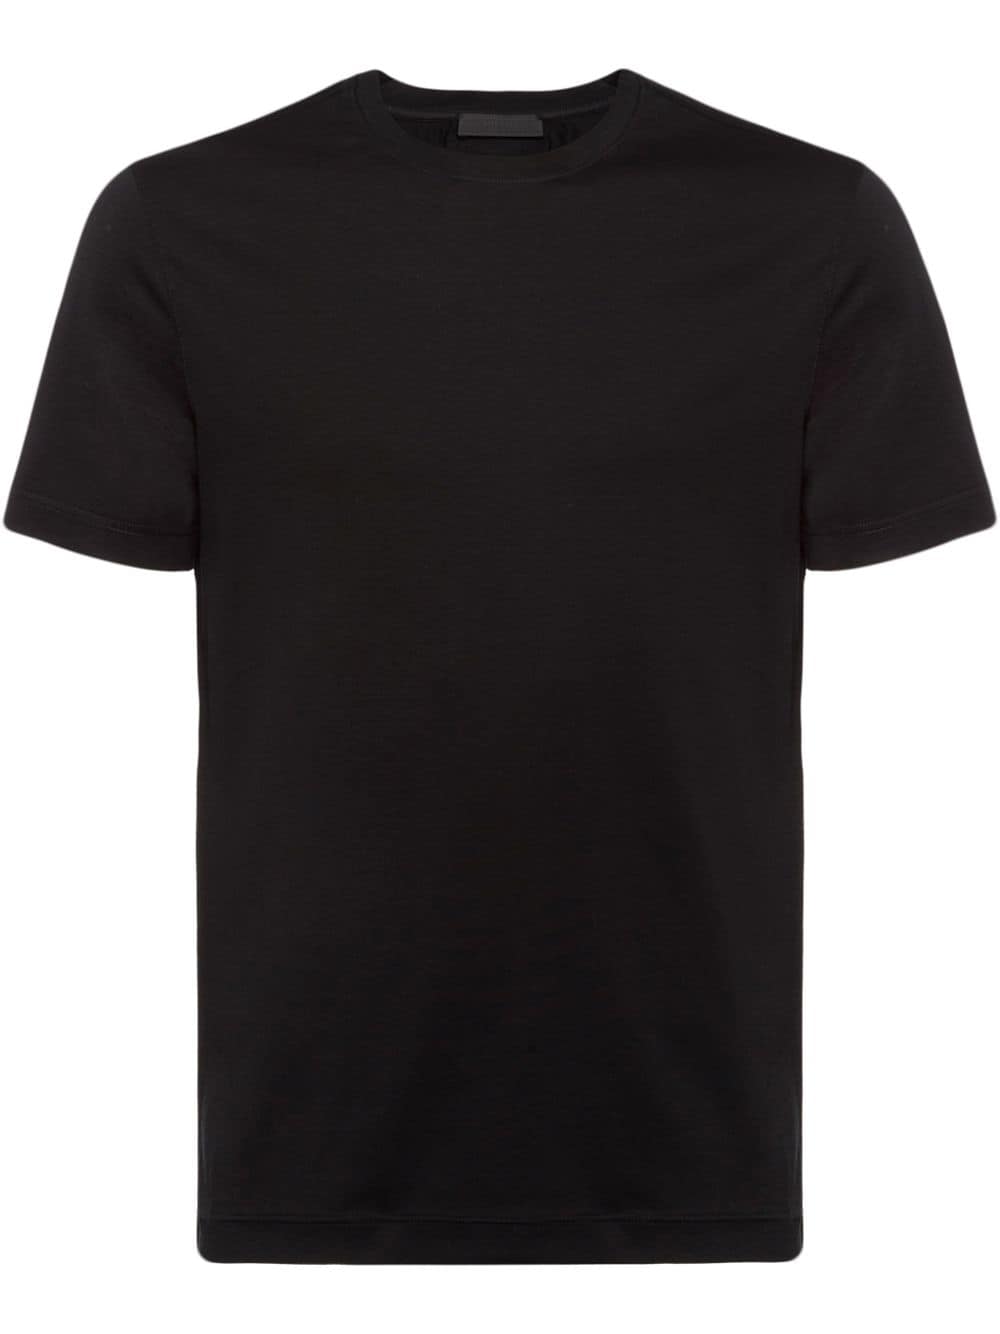 Prada T-shirt met ronde hals - Zwart